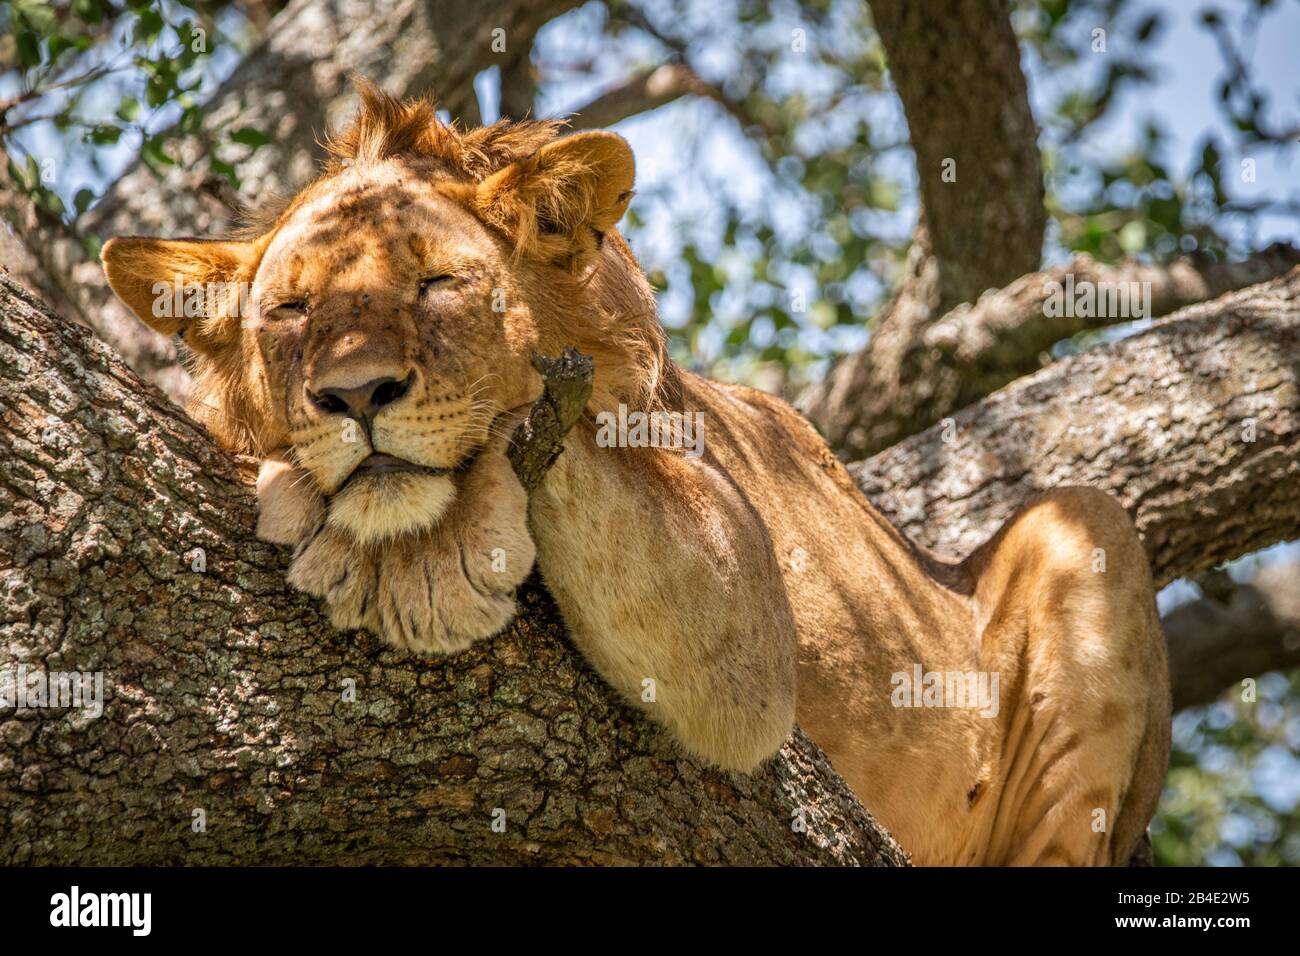 Eine Fuß-, Zelt- und Jeep-Safari durch Nordtansania am Ende der Regenzeit im Mai. Nationalparks Serengeti, Ngorongoro-Krater, Tarangire, Arusha und Lake Manyara. Löwen klettern auf Bäume und schlafen dort ... - in der Serengeti. Stockfoto